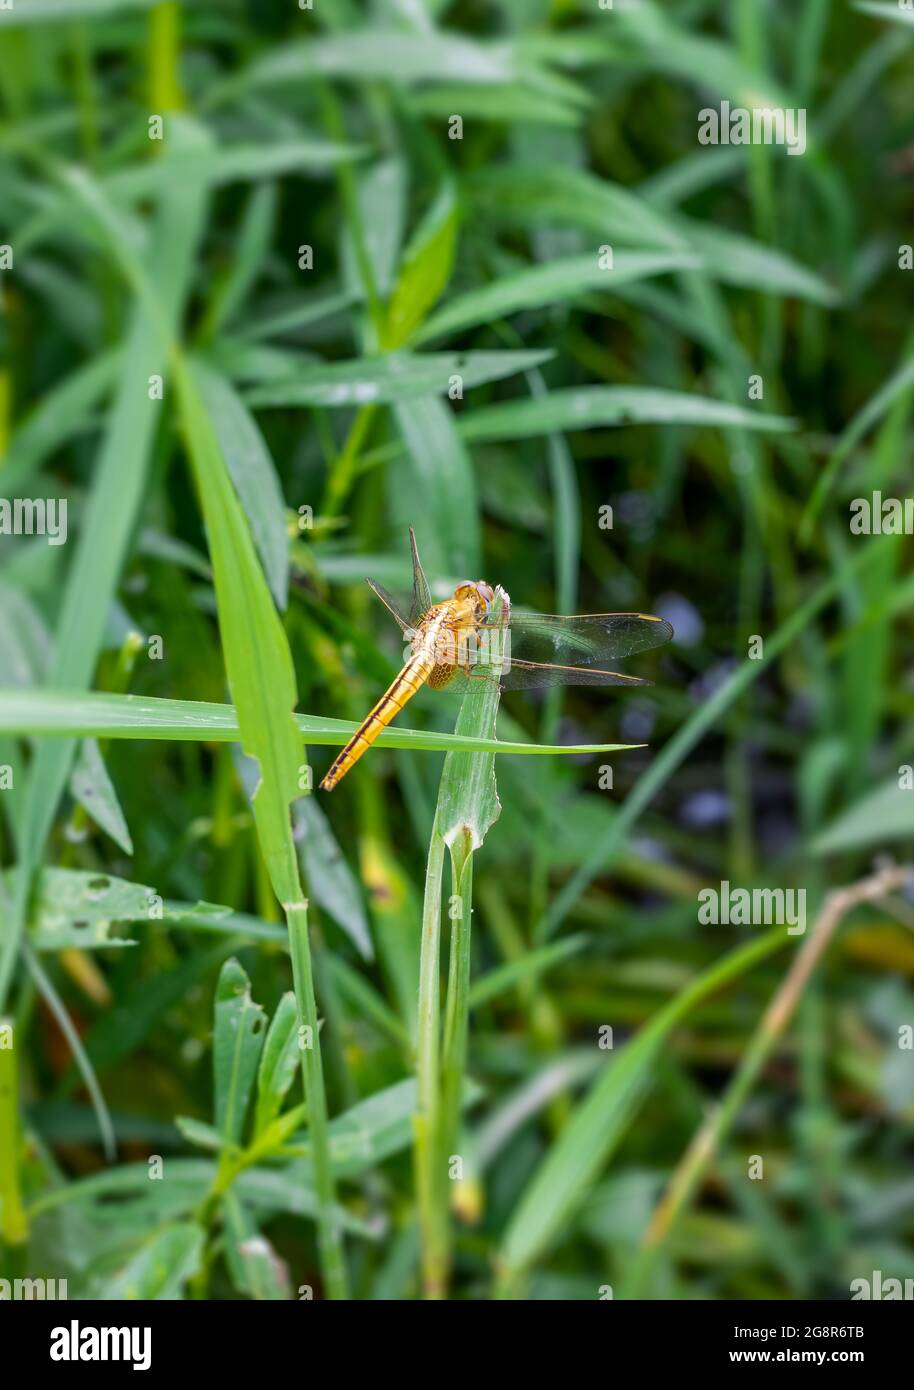 Grande libellula arancione con ali trasparenti appoggiate sulla giungla Foto Stock